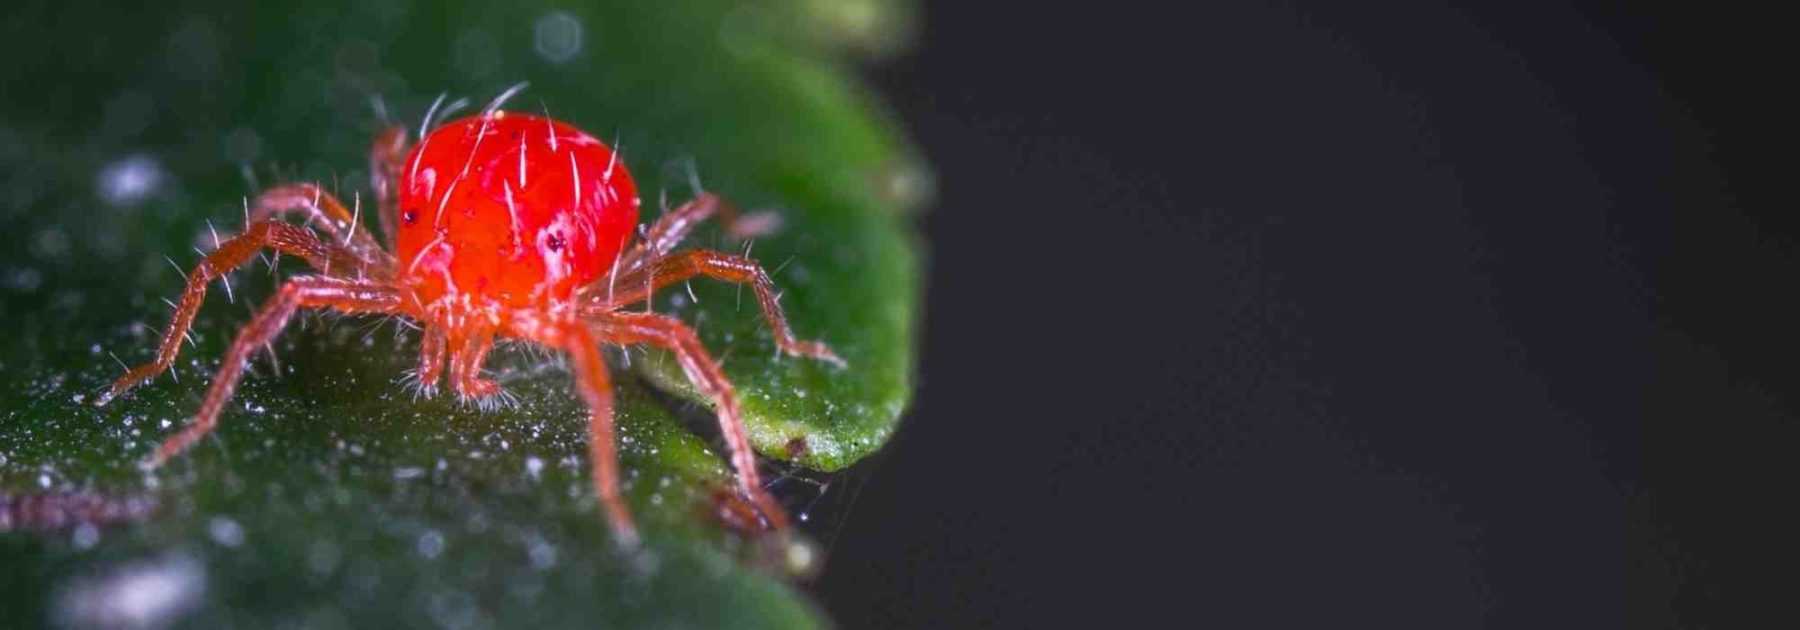 Araignée rouge : identification et traitement